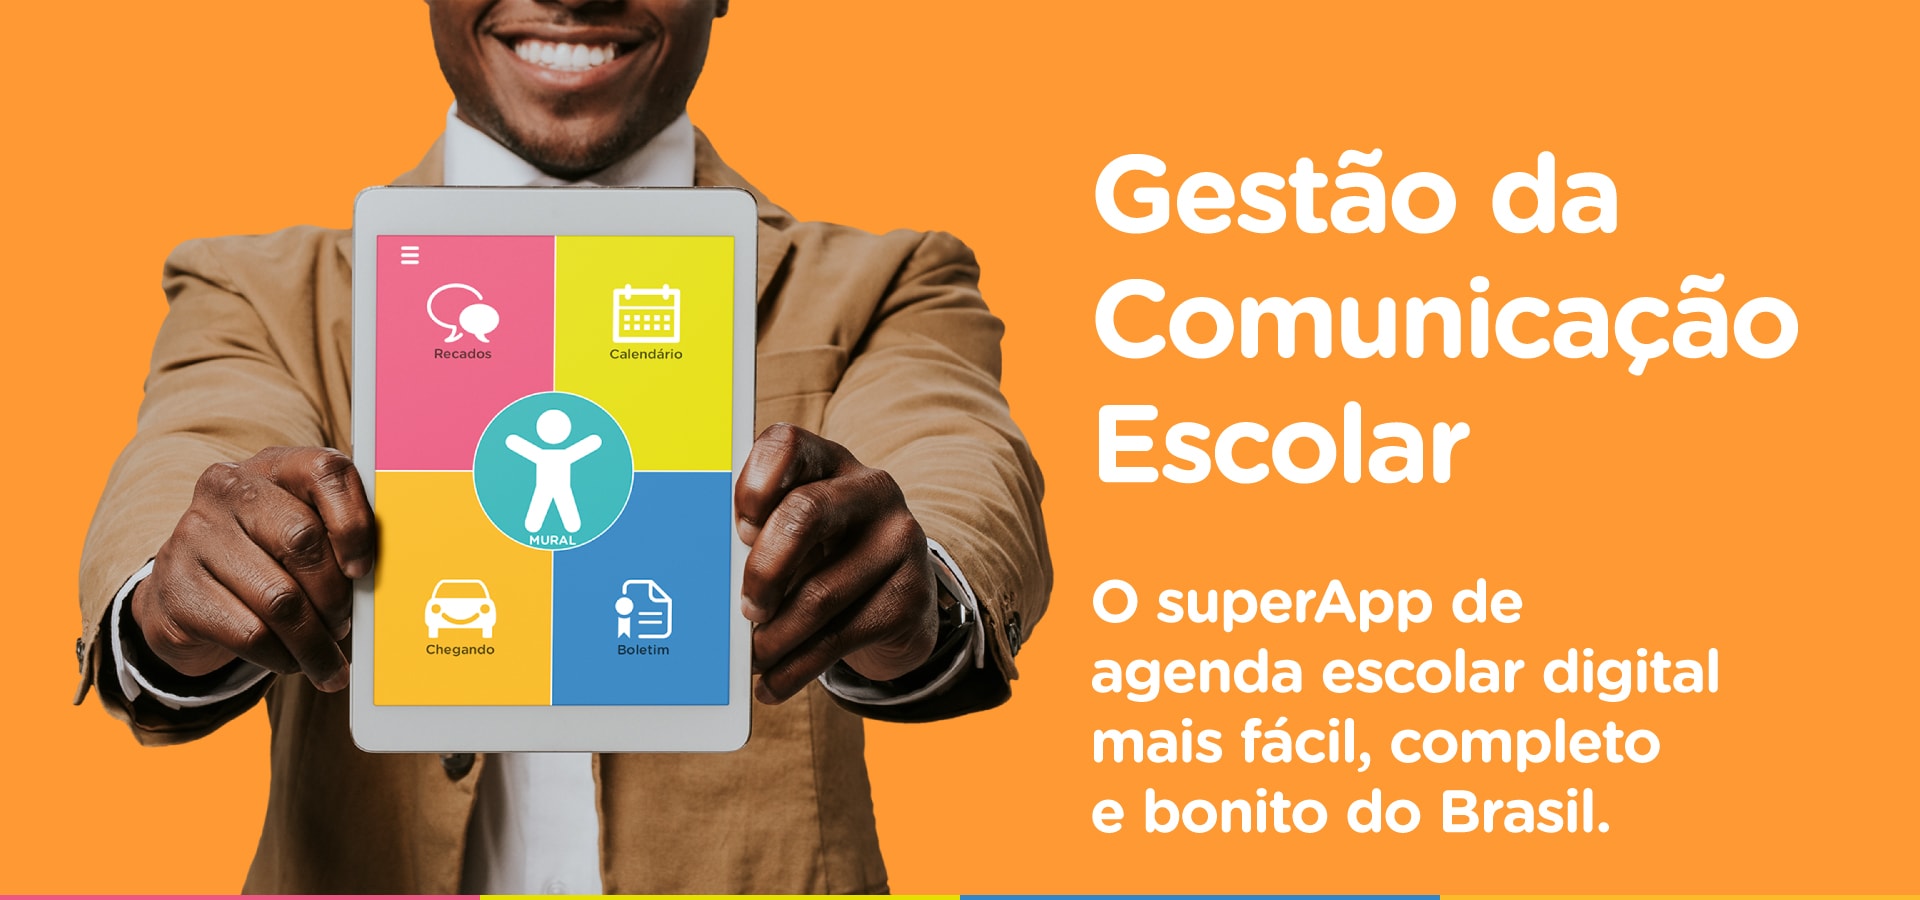 Gestão da comunicação escolar com a melhor agenda digital do Brasil